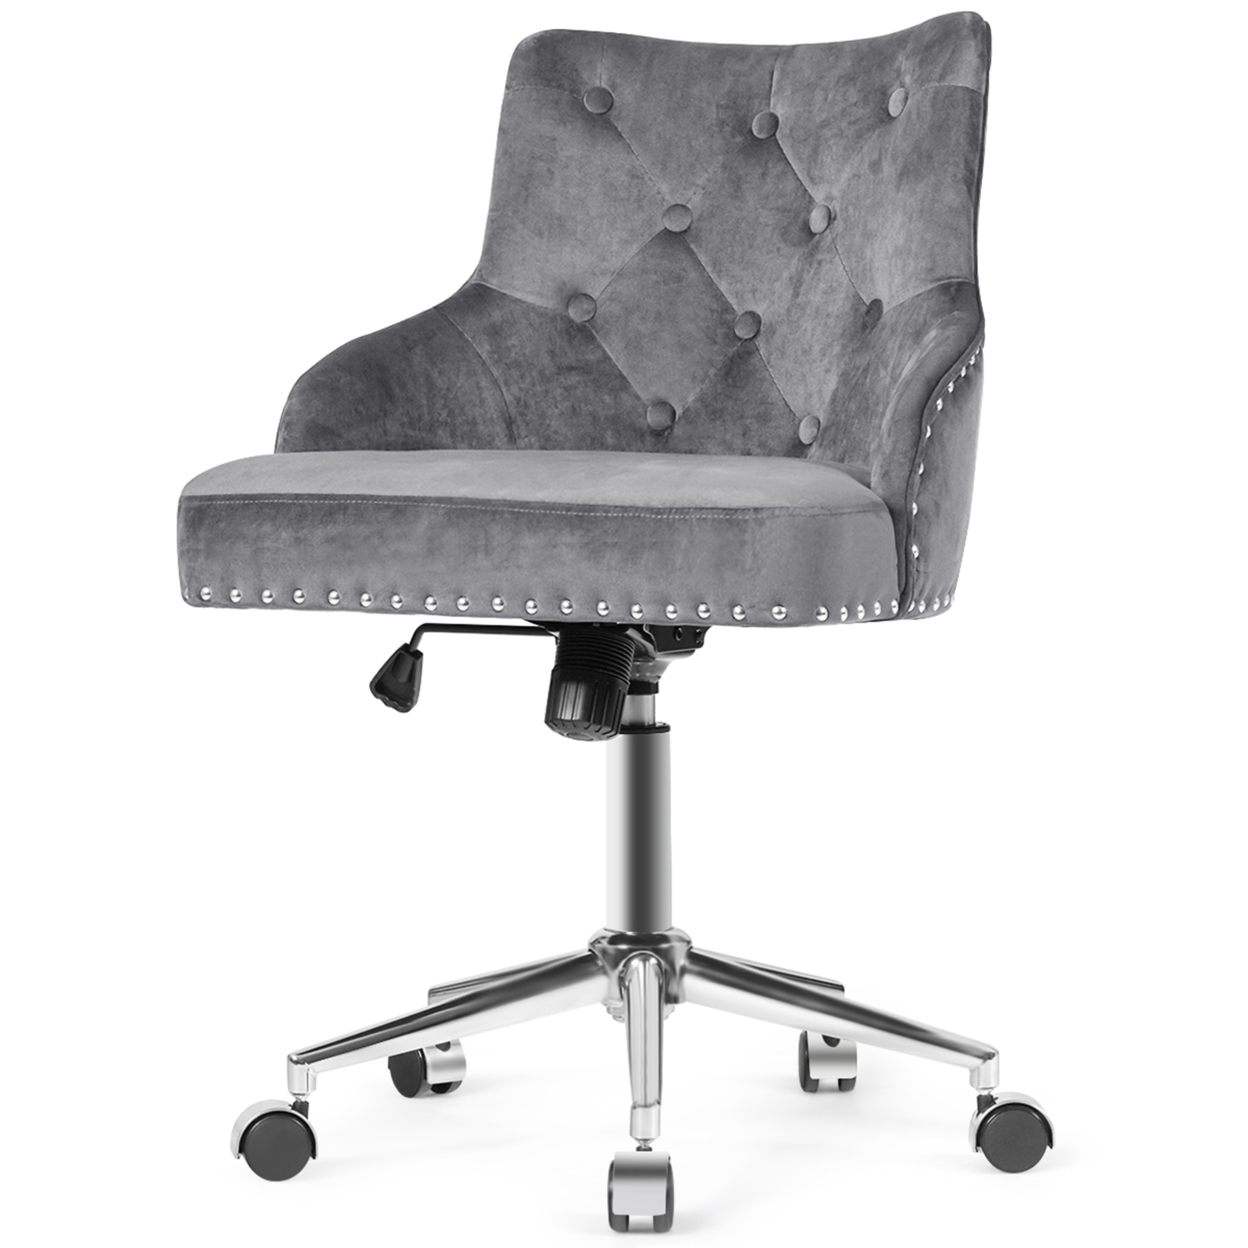 Velvet Office Chair Tufted Upholstered Swivel Computer Desk Chair W/ Nailed Trim